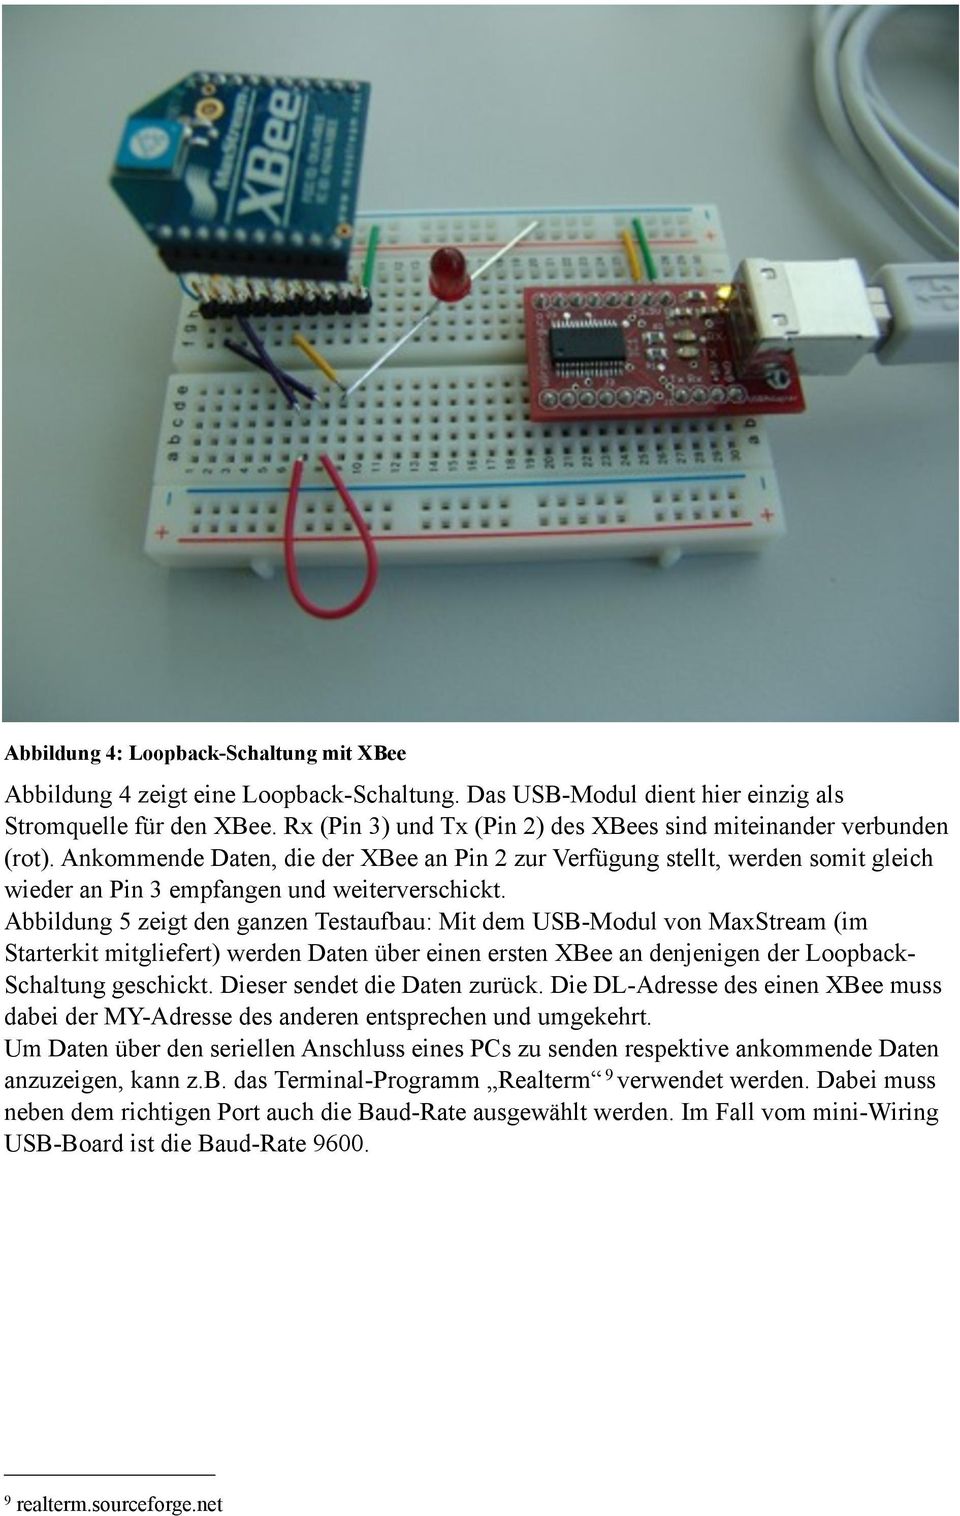 Abbildung 5 zeigt den ganzen Testaufbau: Mit dem USB-Modul von MaxStream (im Starterkit mitgliefert) werden Daten über einen ersten XBee an denjenigen der Loopback- Schaltung geschickt.